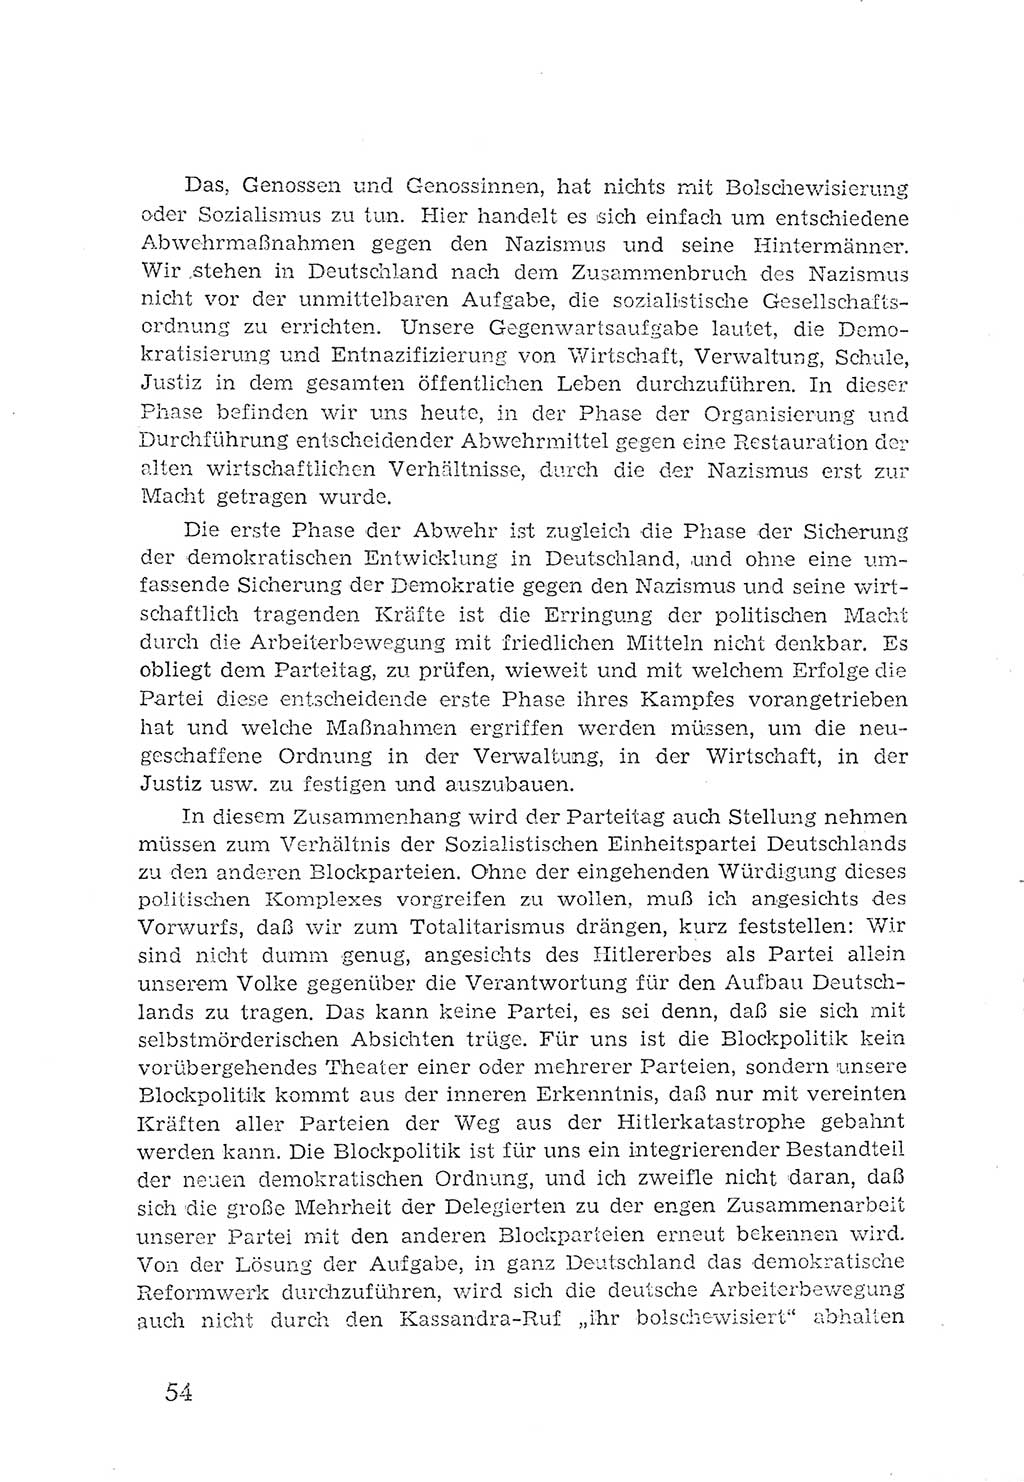 Protokoll der Verhandlungen des 2. Parteitages der Sozialistischen Einheitspartei Deutschlands (SED) [Sowjetische Besatzungszone (SBZ) Deutschlands] 1947, Seite 54 (Prot. Verh. 2. PT SED SBZ Dtl. 1947, S. 54)